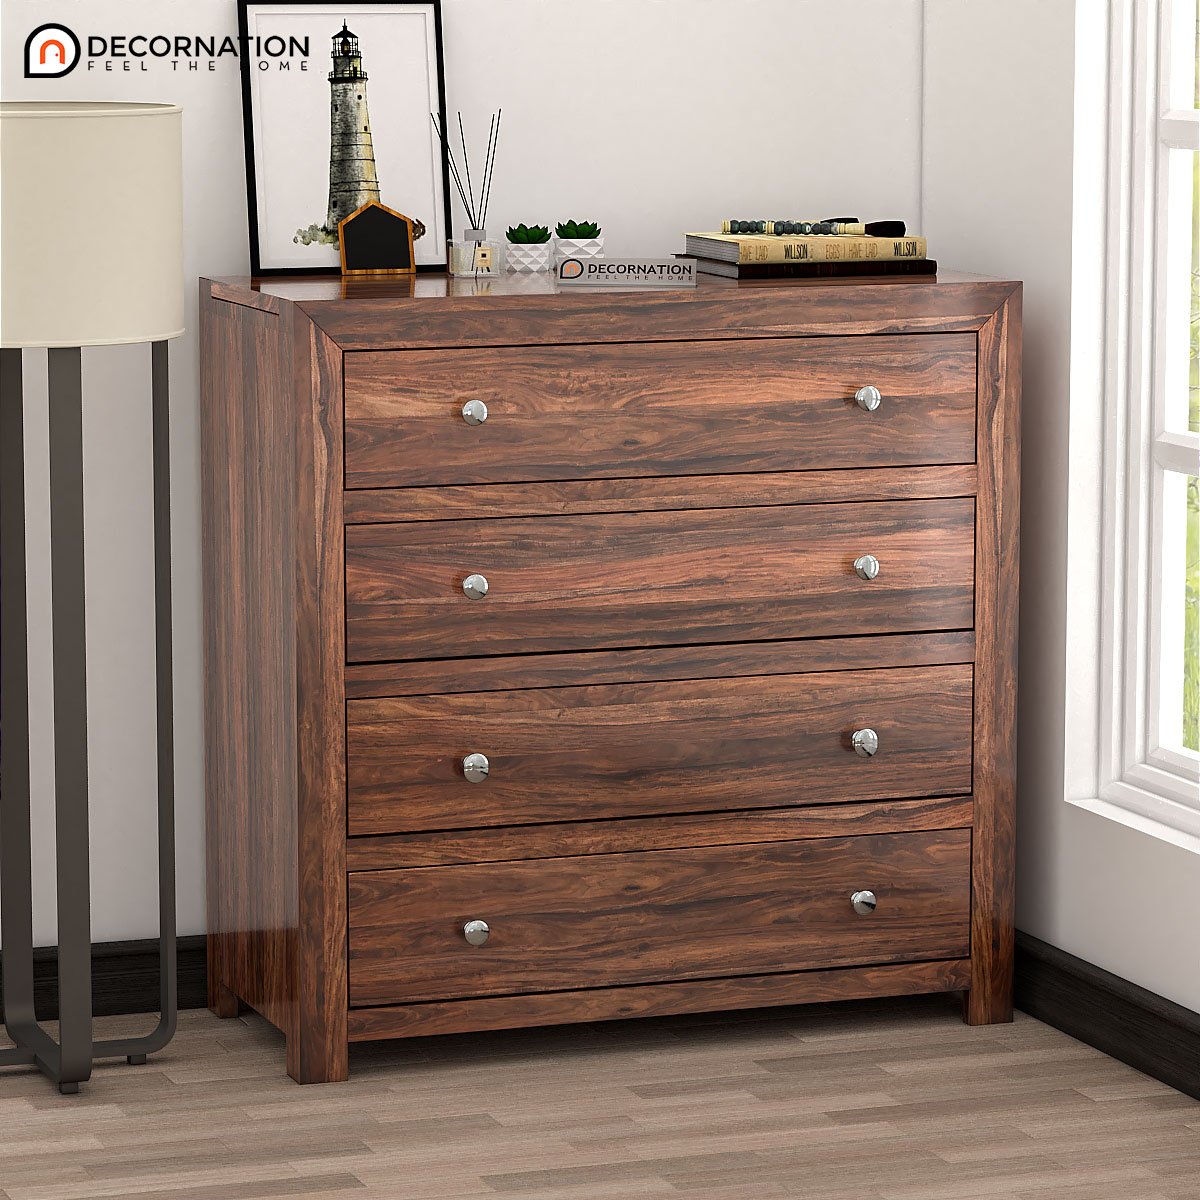 Caesar Wooden Drawer Storage Cabinet - Brown - Decornation